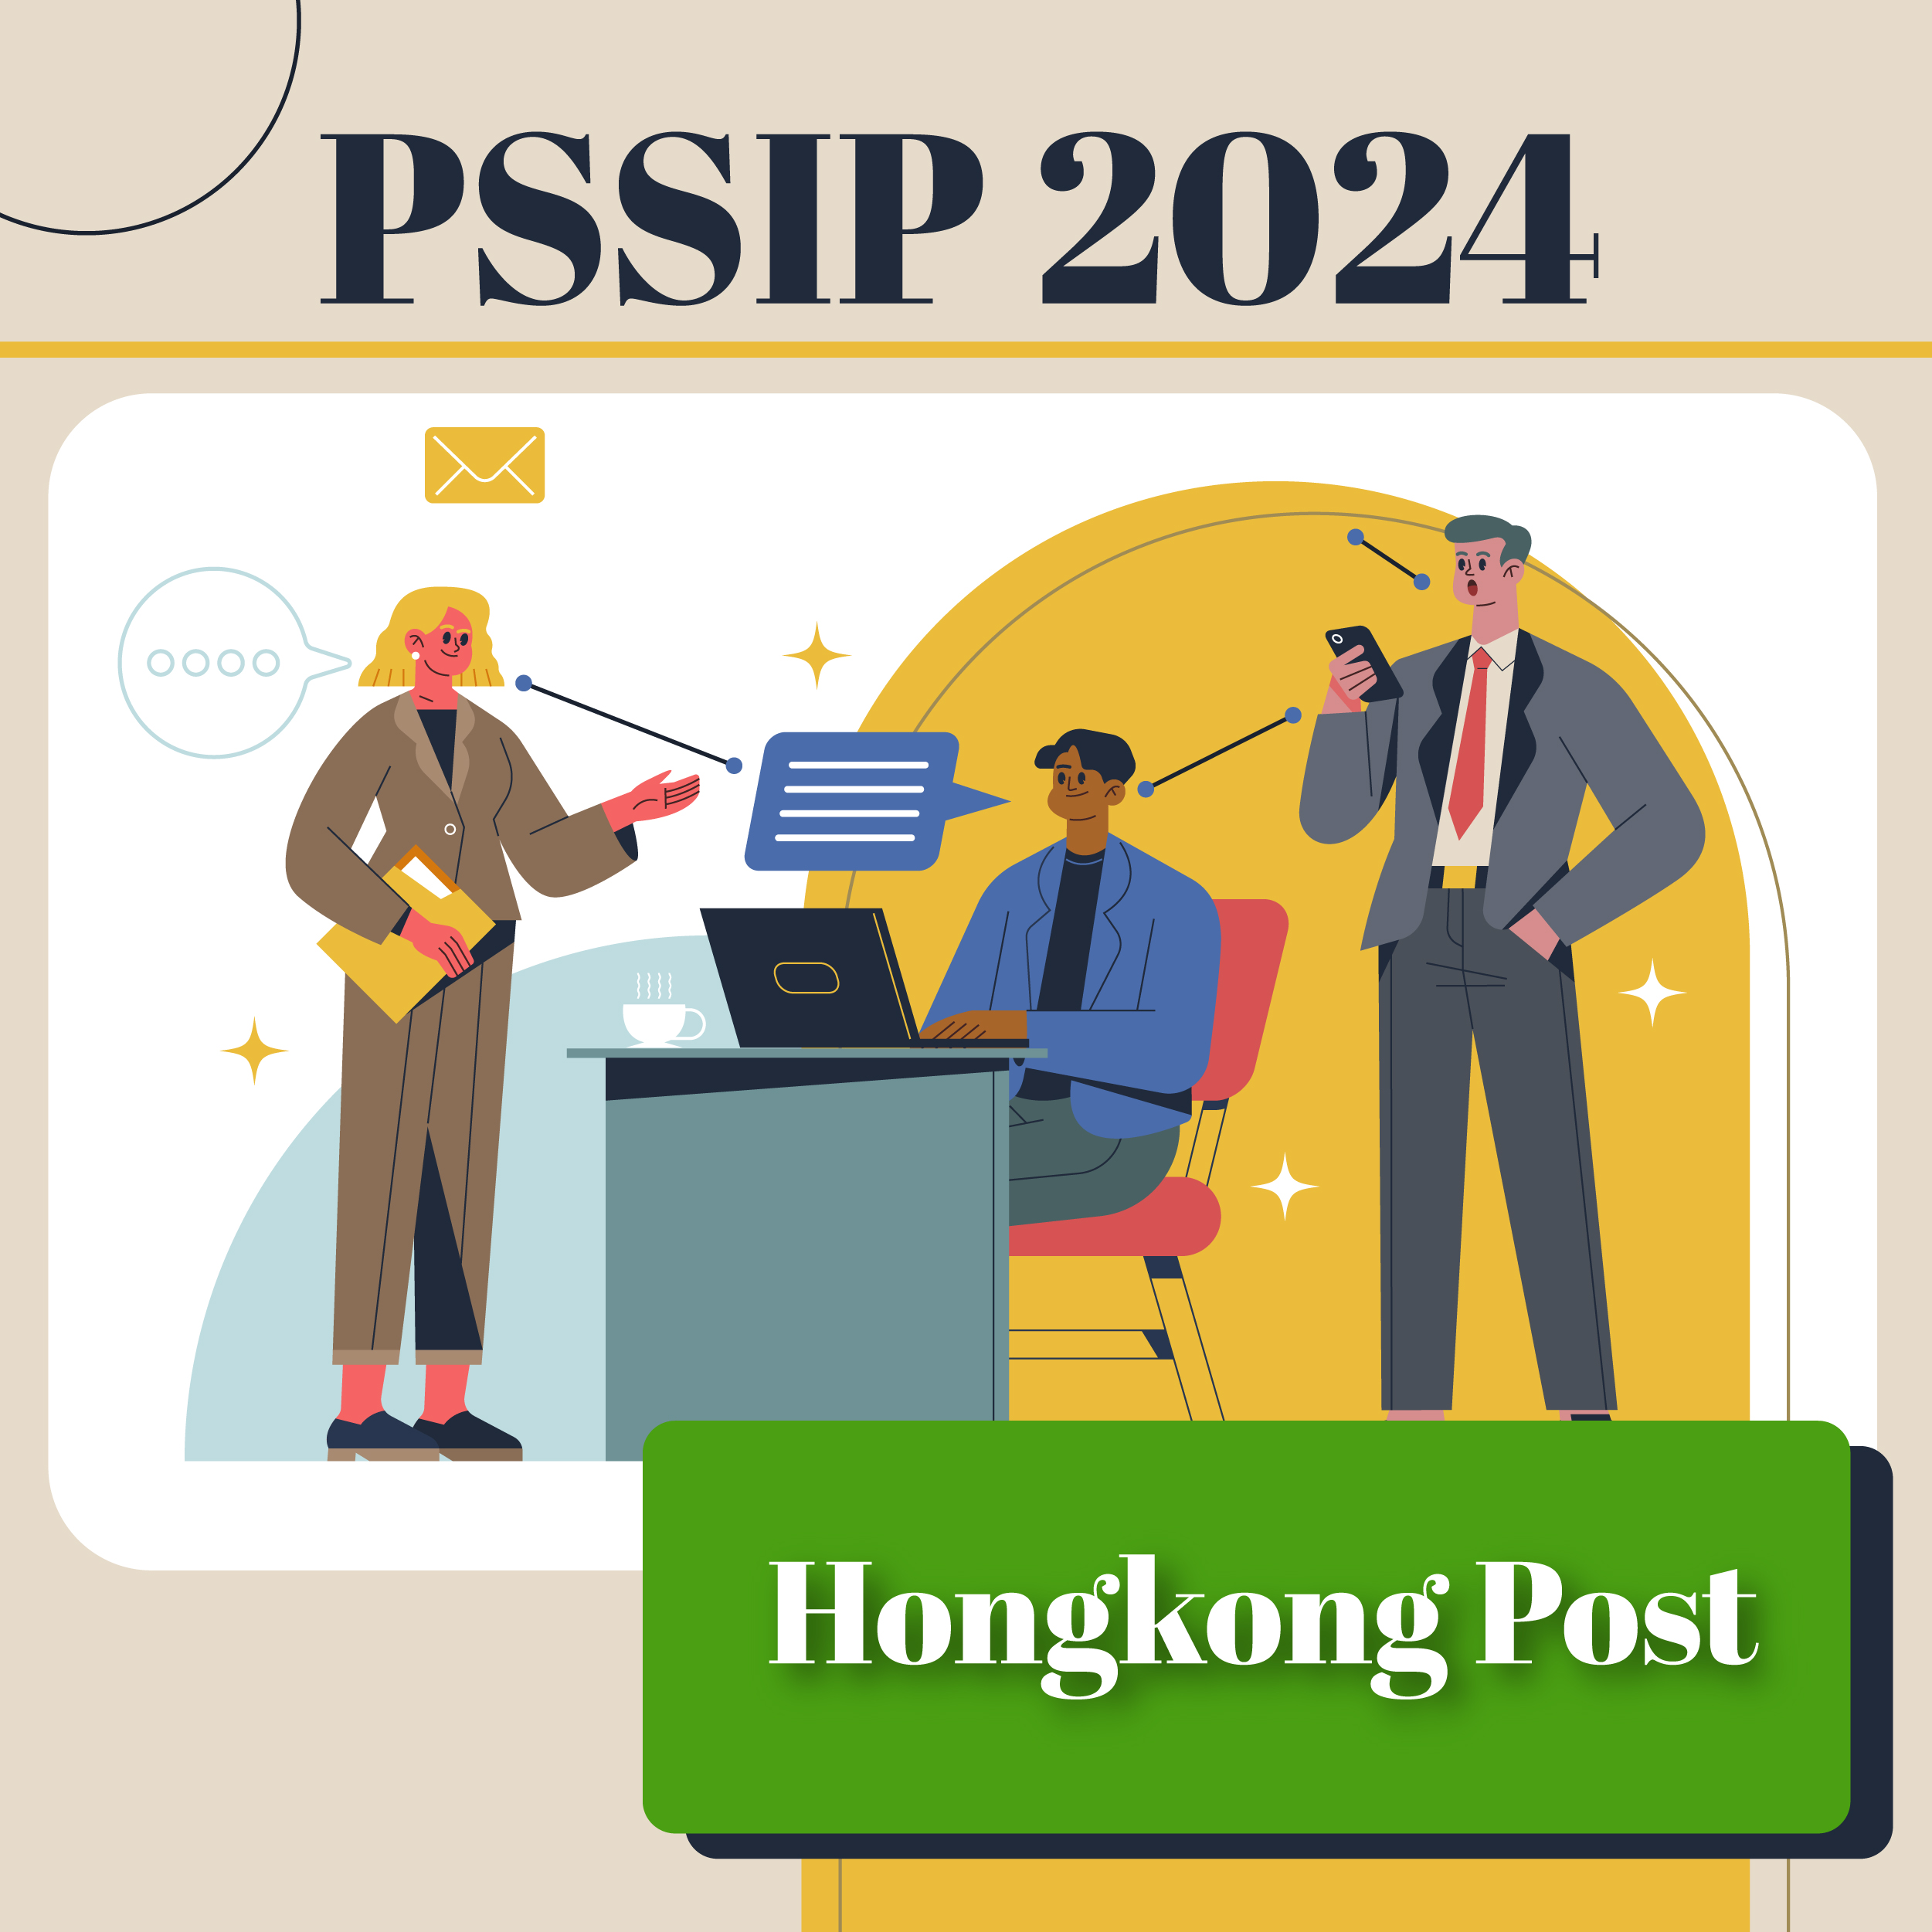 PSSIP2024 – Hongkong Post